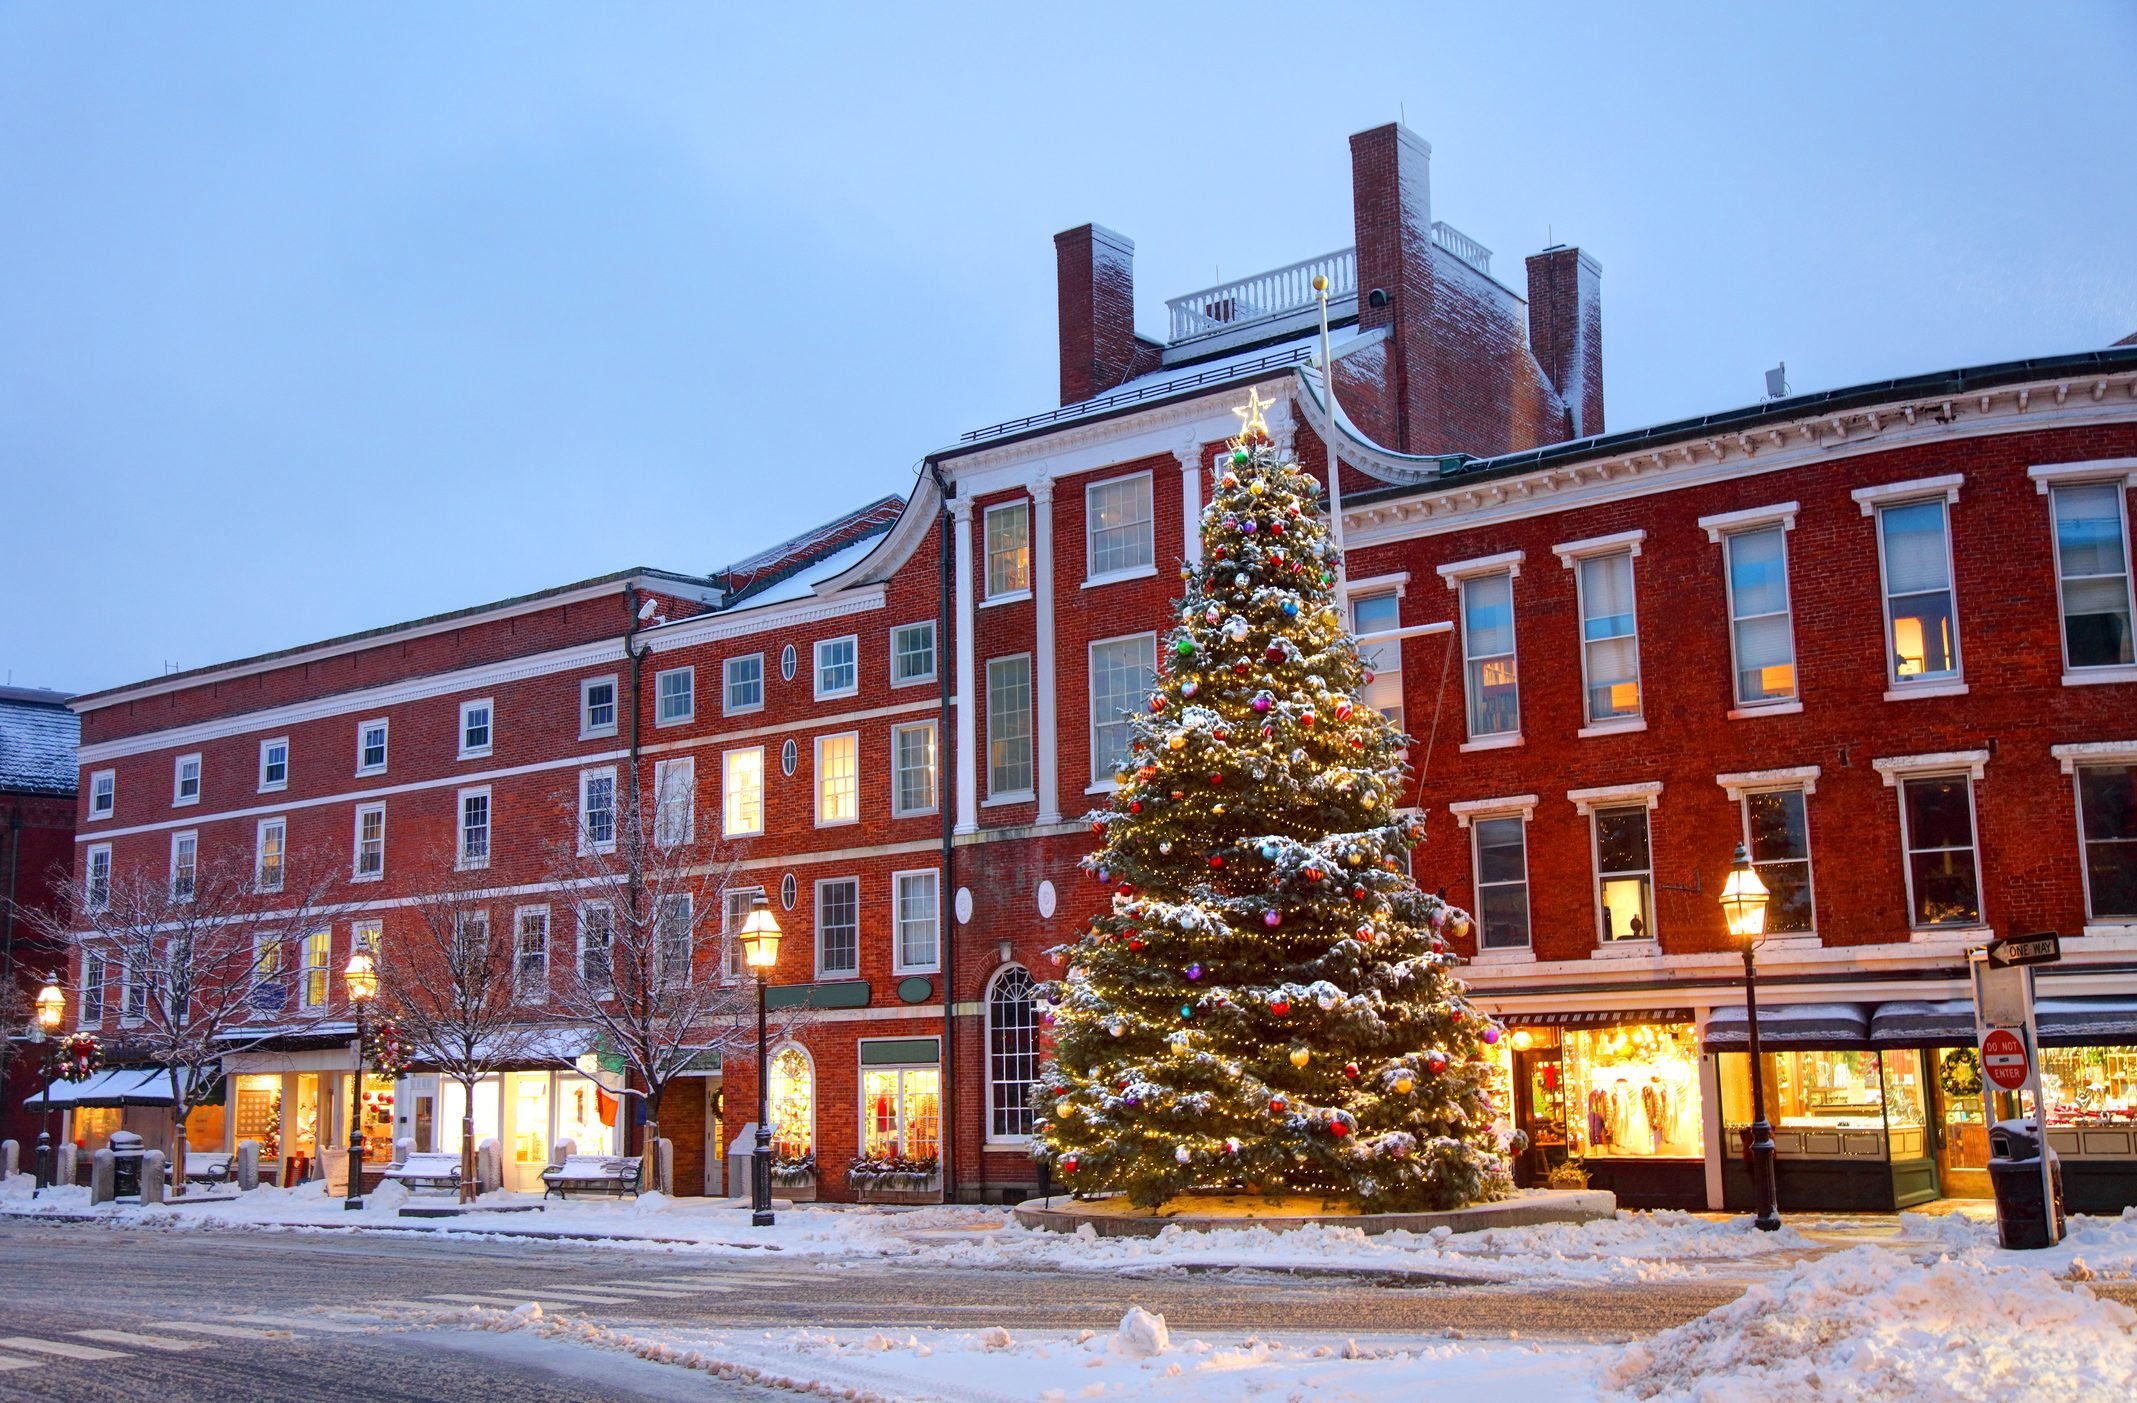 Le migliori città di Natale in America da visitare almeno una volta 